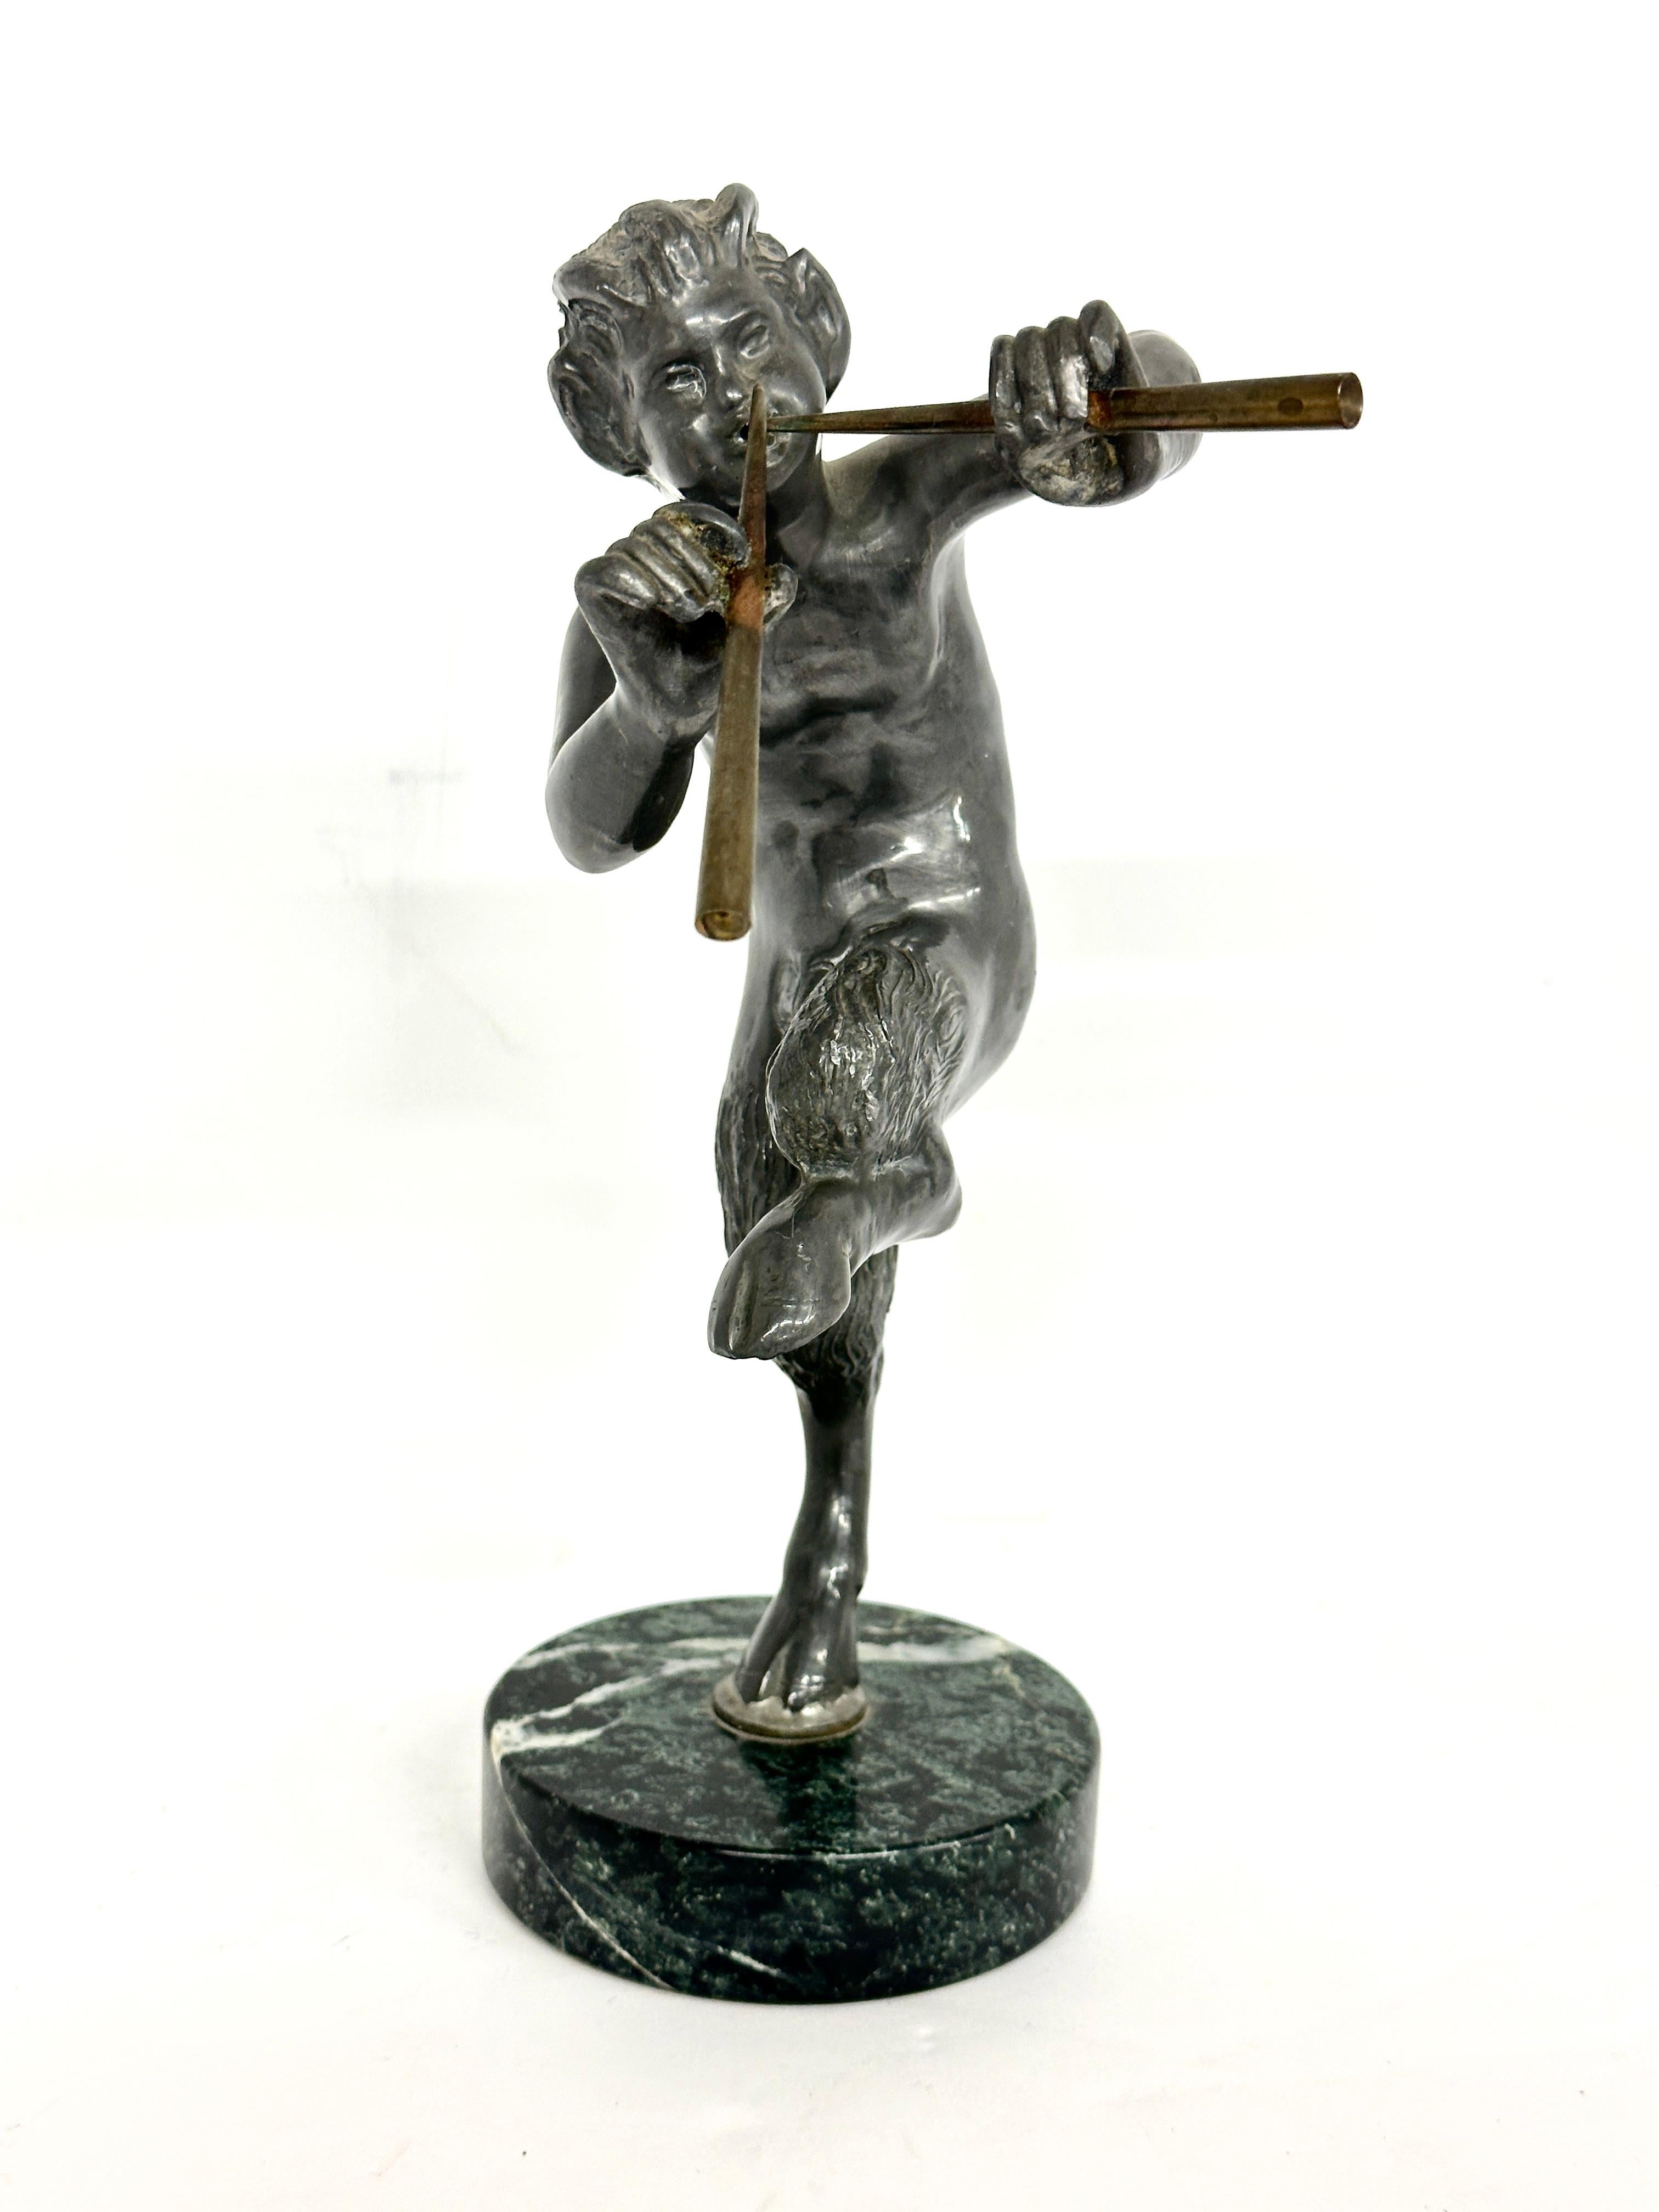 Eine schöne Metallskulptur von Pan, der seine Pfeifen oder Flöten spielt. Neoklassische Grand Tour Skulptur nach der Antike. Dieses schön gegossene und bearbeitete Exemplar ist auf einem runden Marmorsockel montiert. Wahrscheinlich aus der Mitte des